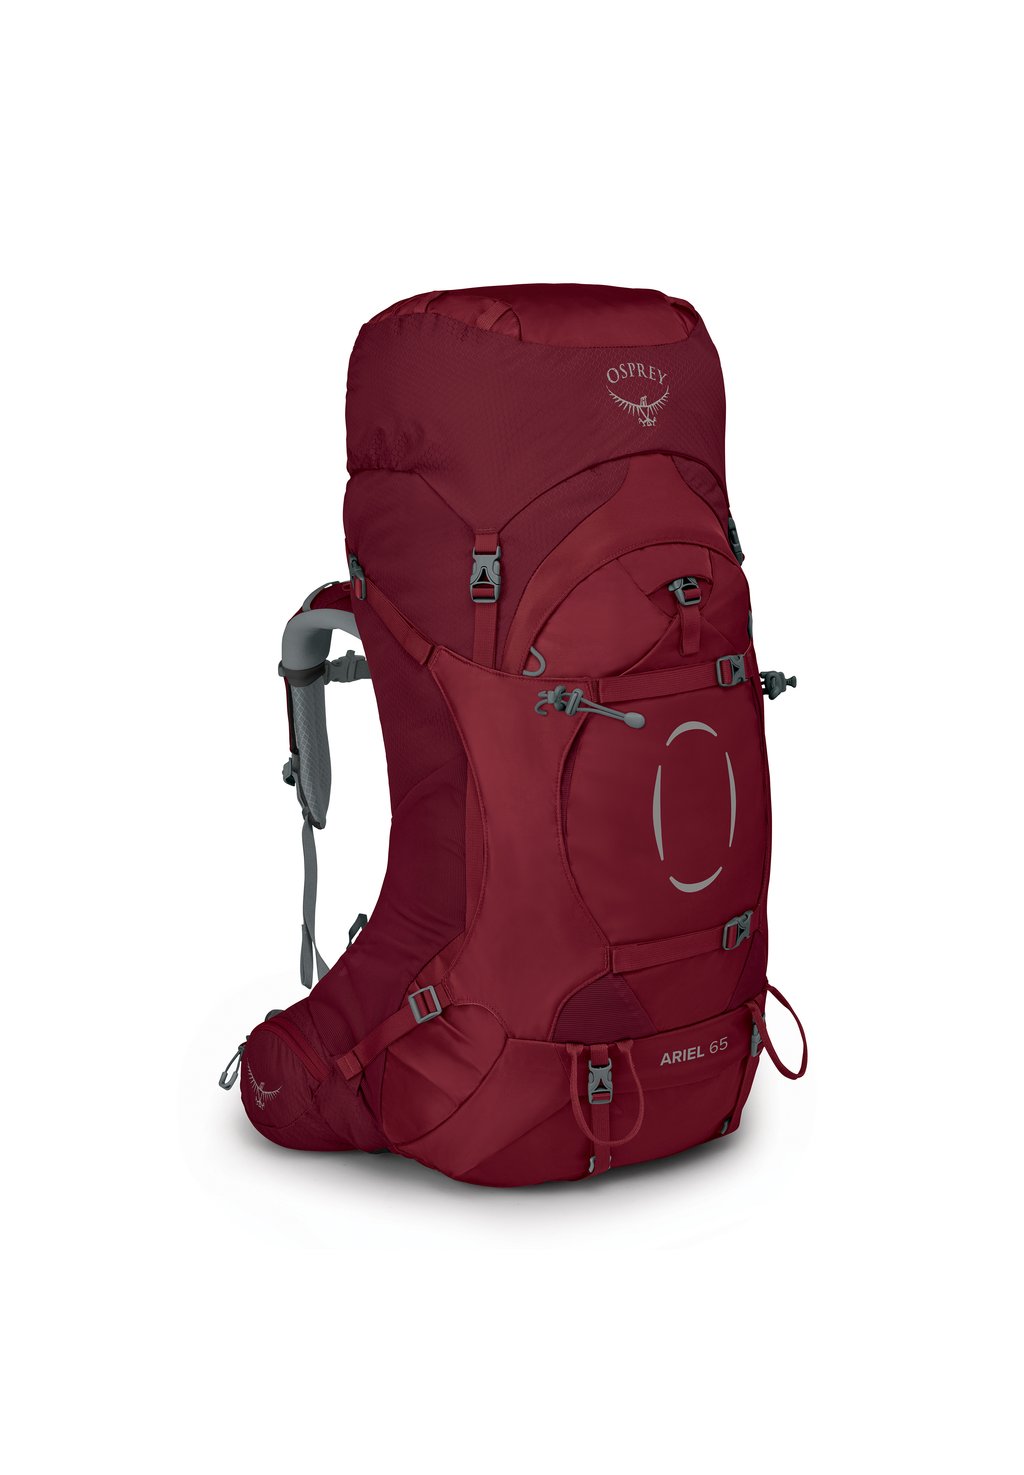 Рюкзак Ariel Osprey, цвет claret red рюкзак ariel osprey цвет claret red